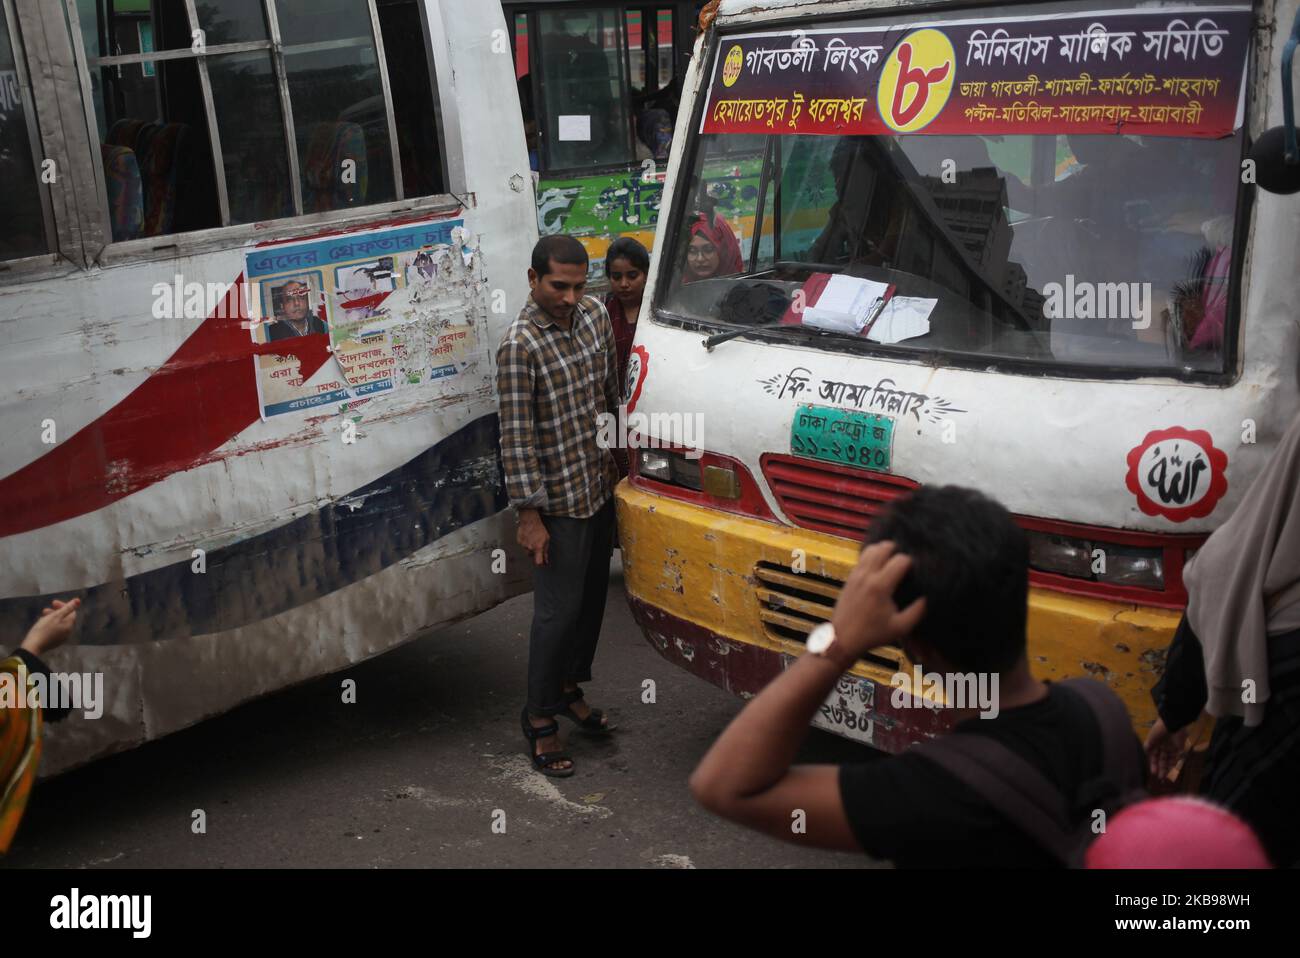 Menschen riskieren ihr Leben, als sie am 26. Oktober 2019 eine belebte Straße in Dhaka, Bangladesch, überqueren. Tausende von Menschen, darunter auch Kinder, starben jedes Jahr an den Folgen eines Verkehrsunfalls in Bangladesch. (Foto von Syed Mahamudur Rahman/NurPhoto) Stockfoto